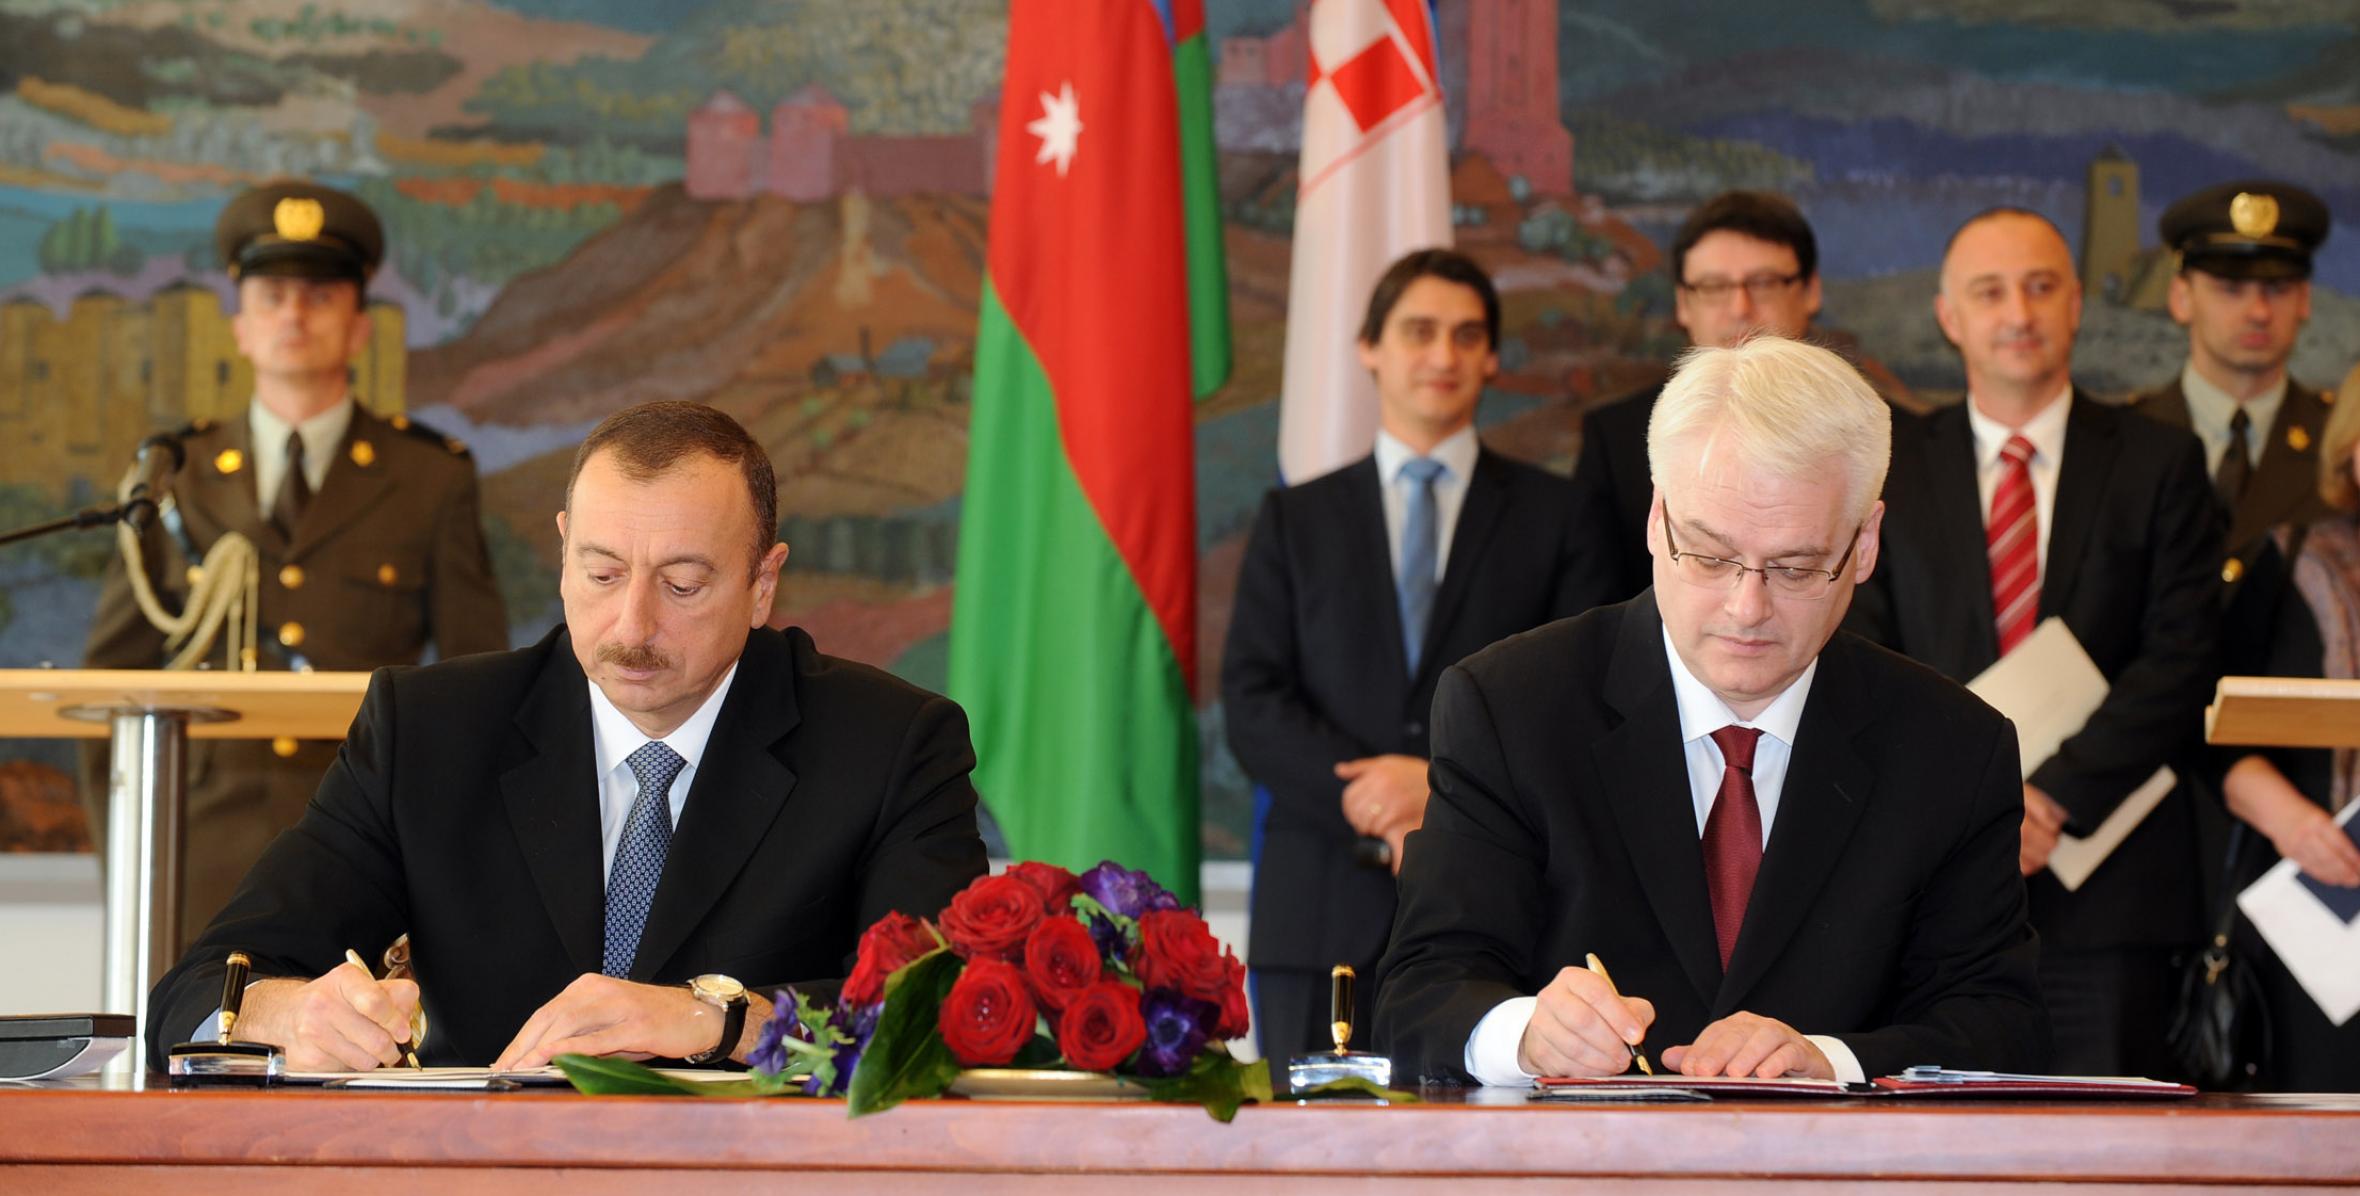 Подписана Загребская декларация об отношениях стратегического партнерства и дружбы между Азербайджанской Республикой и Республикой Хорватия